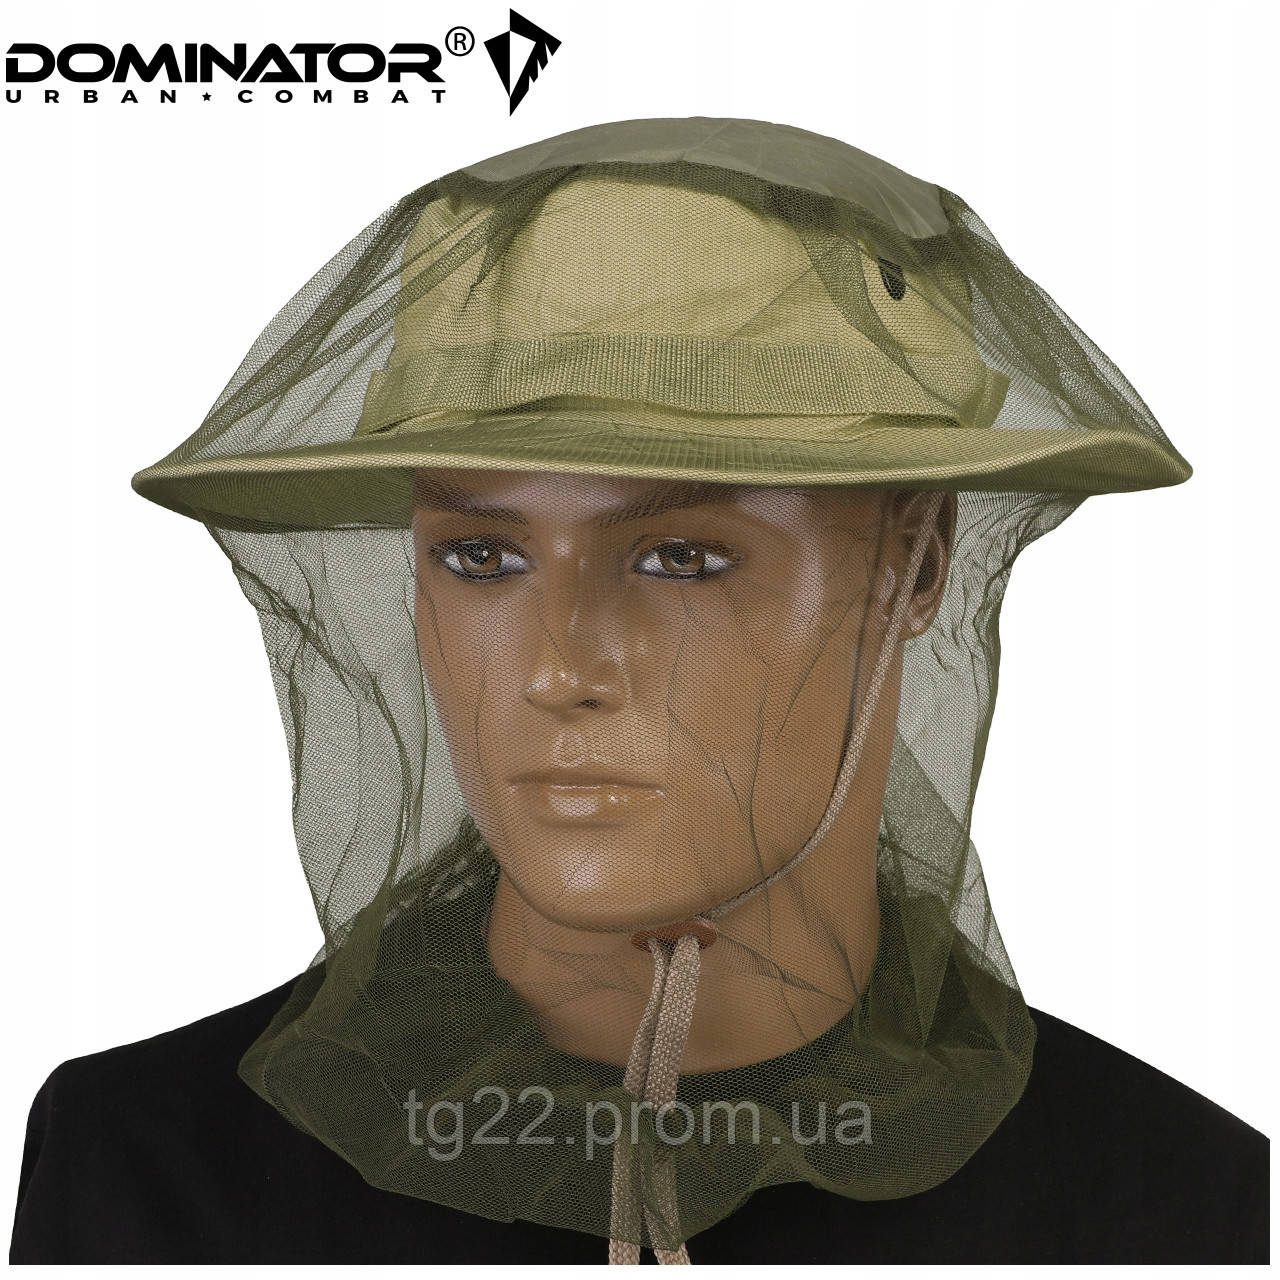 Військова москітна сітка на голову Mil Tec, Dominator, Польща Тактична москітна сітка на панаму та кепку.